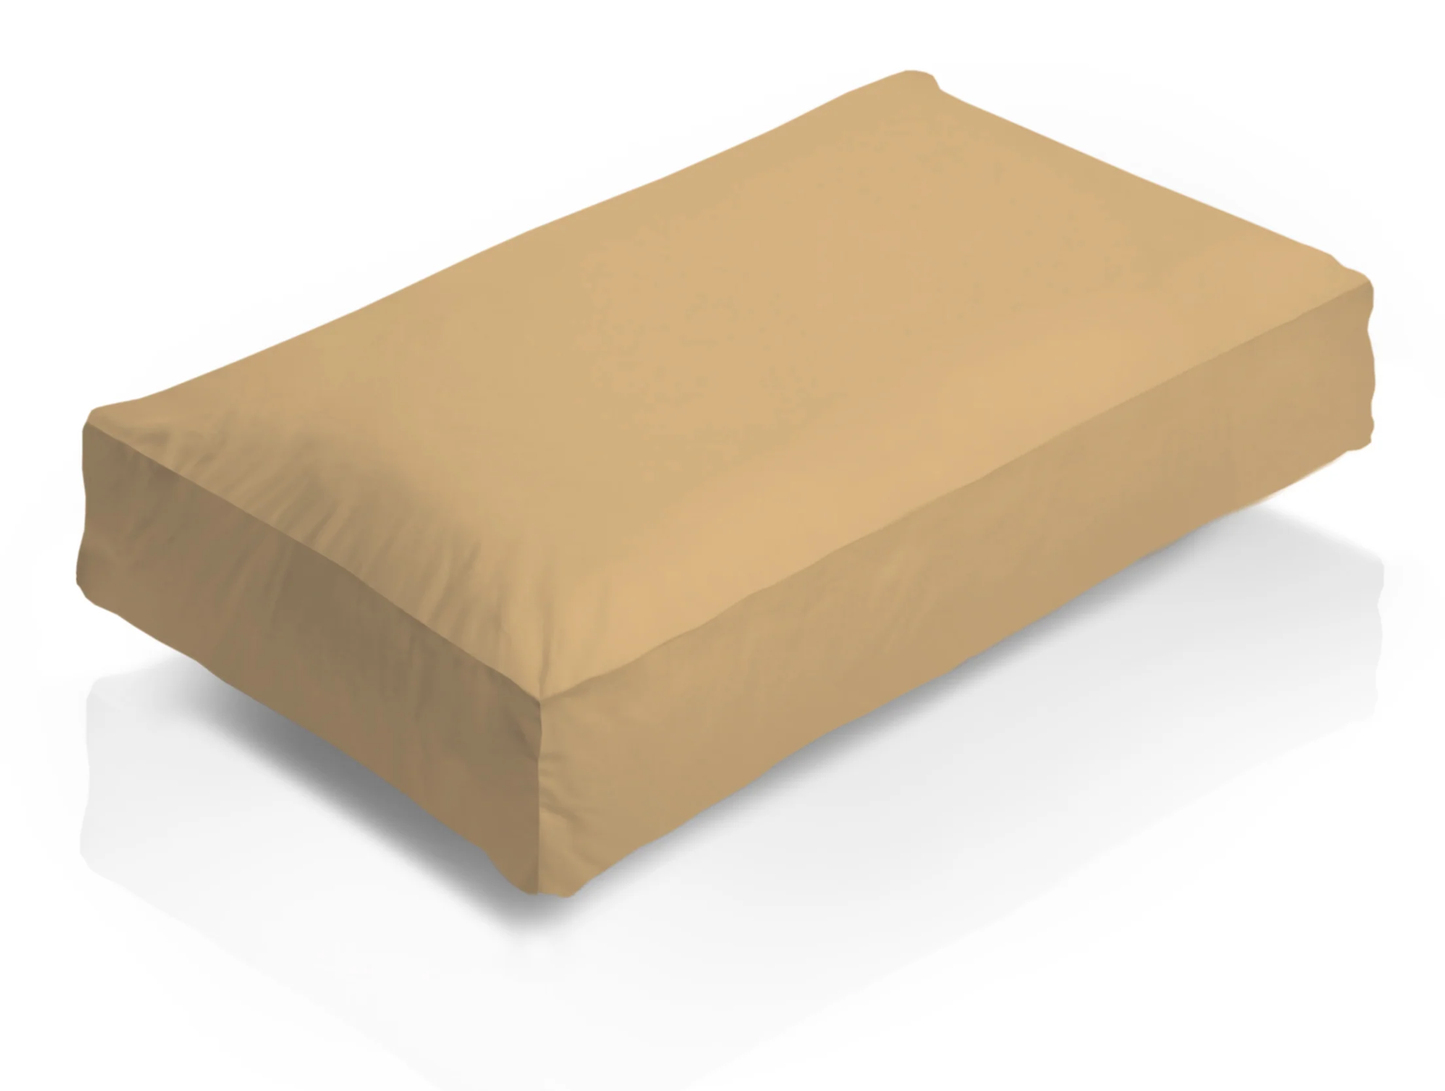 Easycare Percale Deep Box Pillowcase